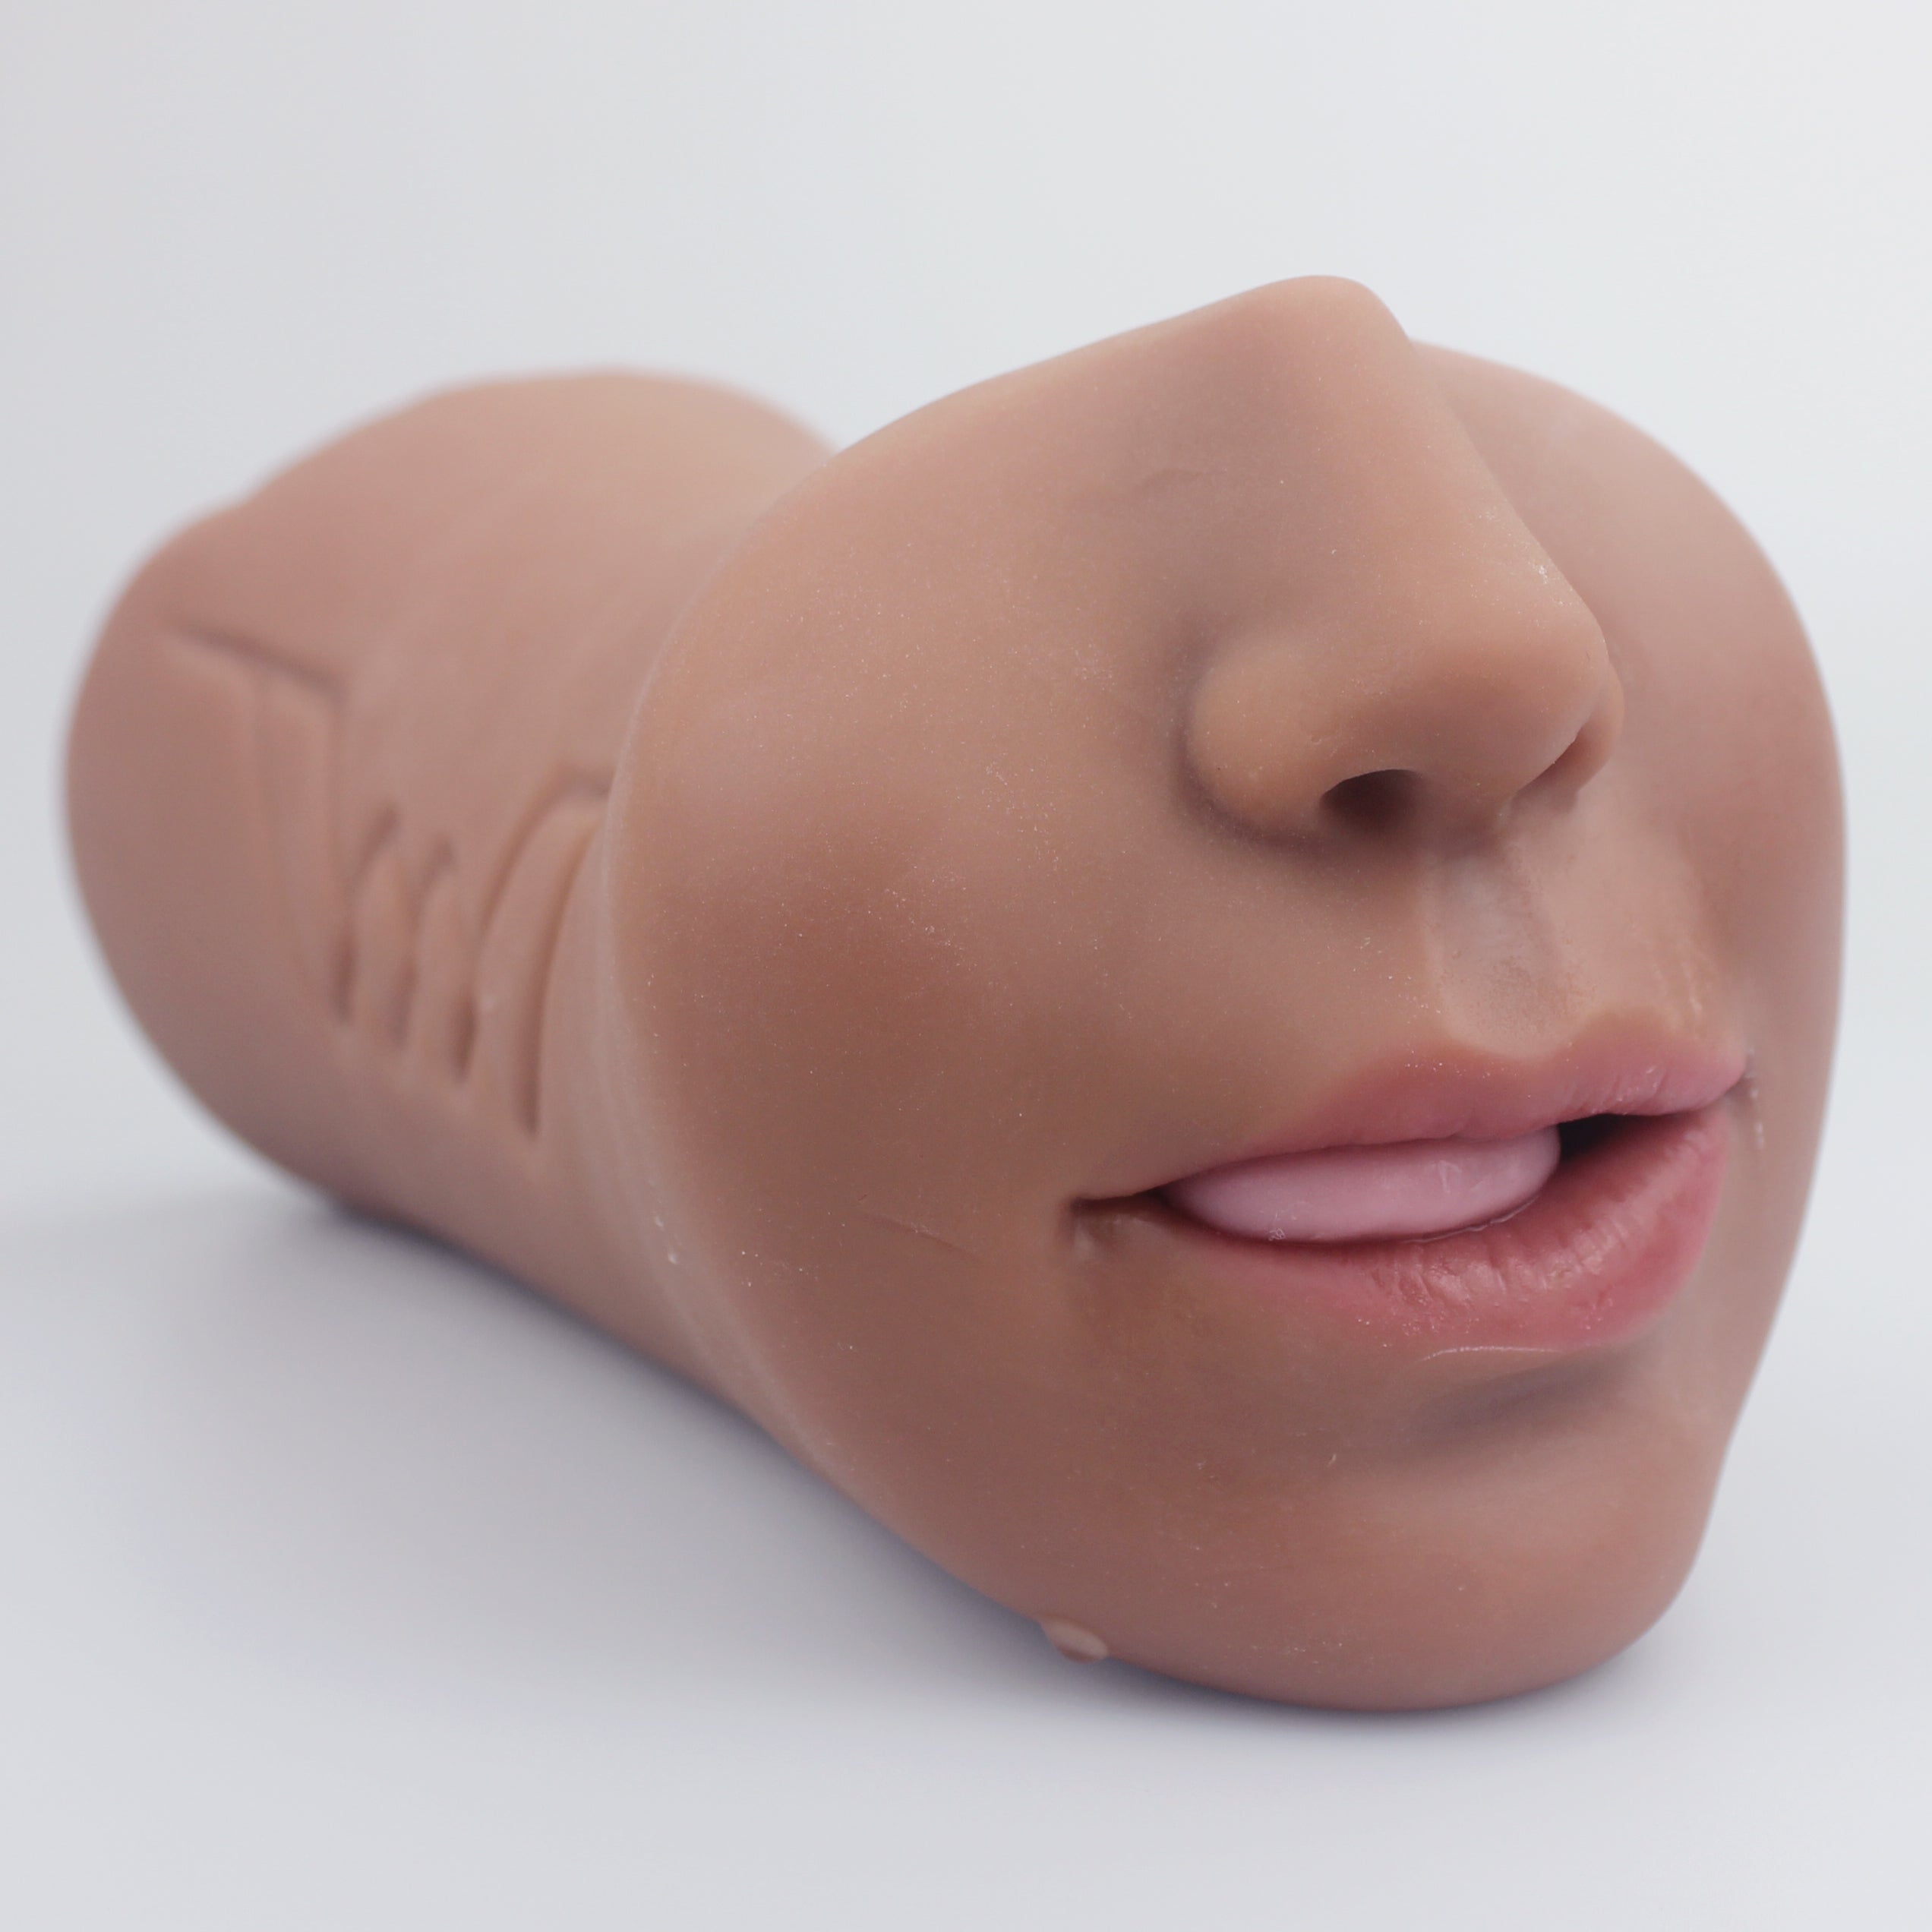 Propinkup Fiona 3IN1 Lebensechte Taschenmuschi Realistisches Anal-Oral-Vaginal-Sexspielzeug Männlicher Masturbator 